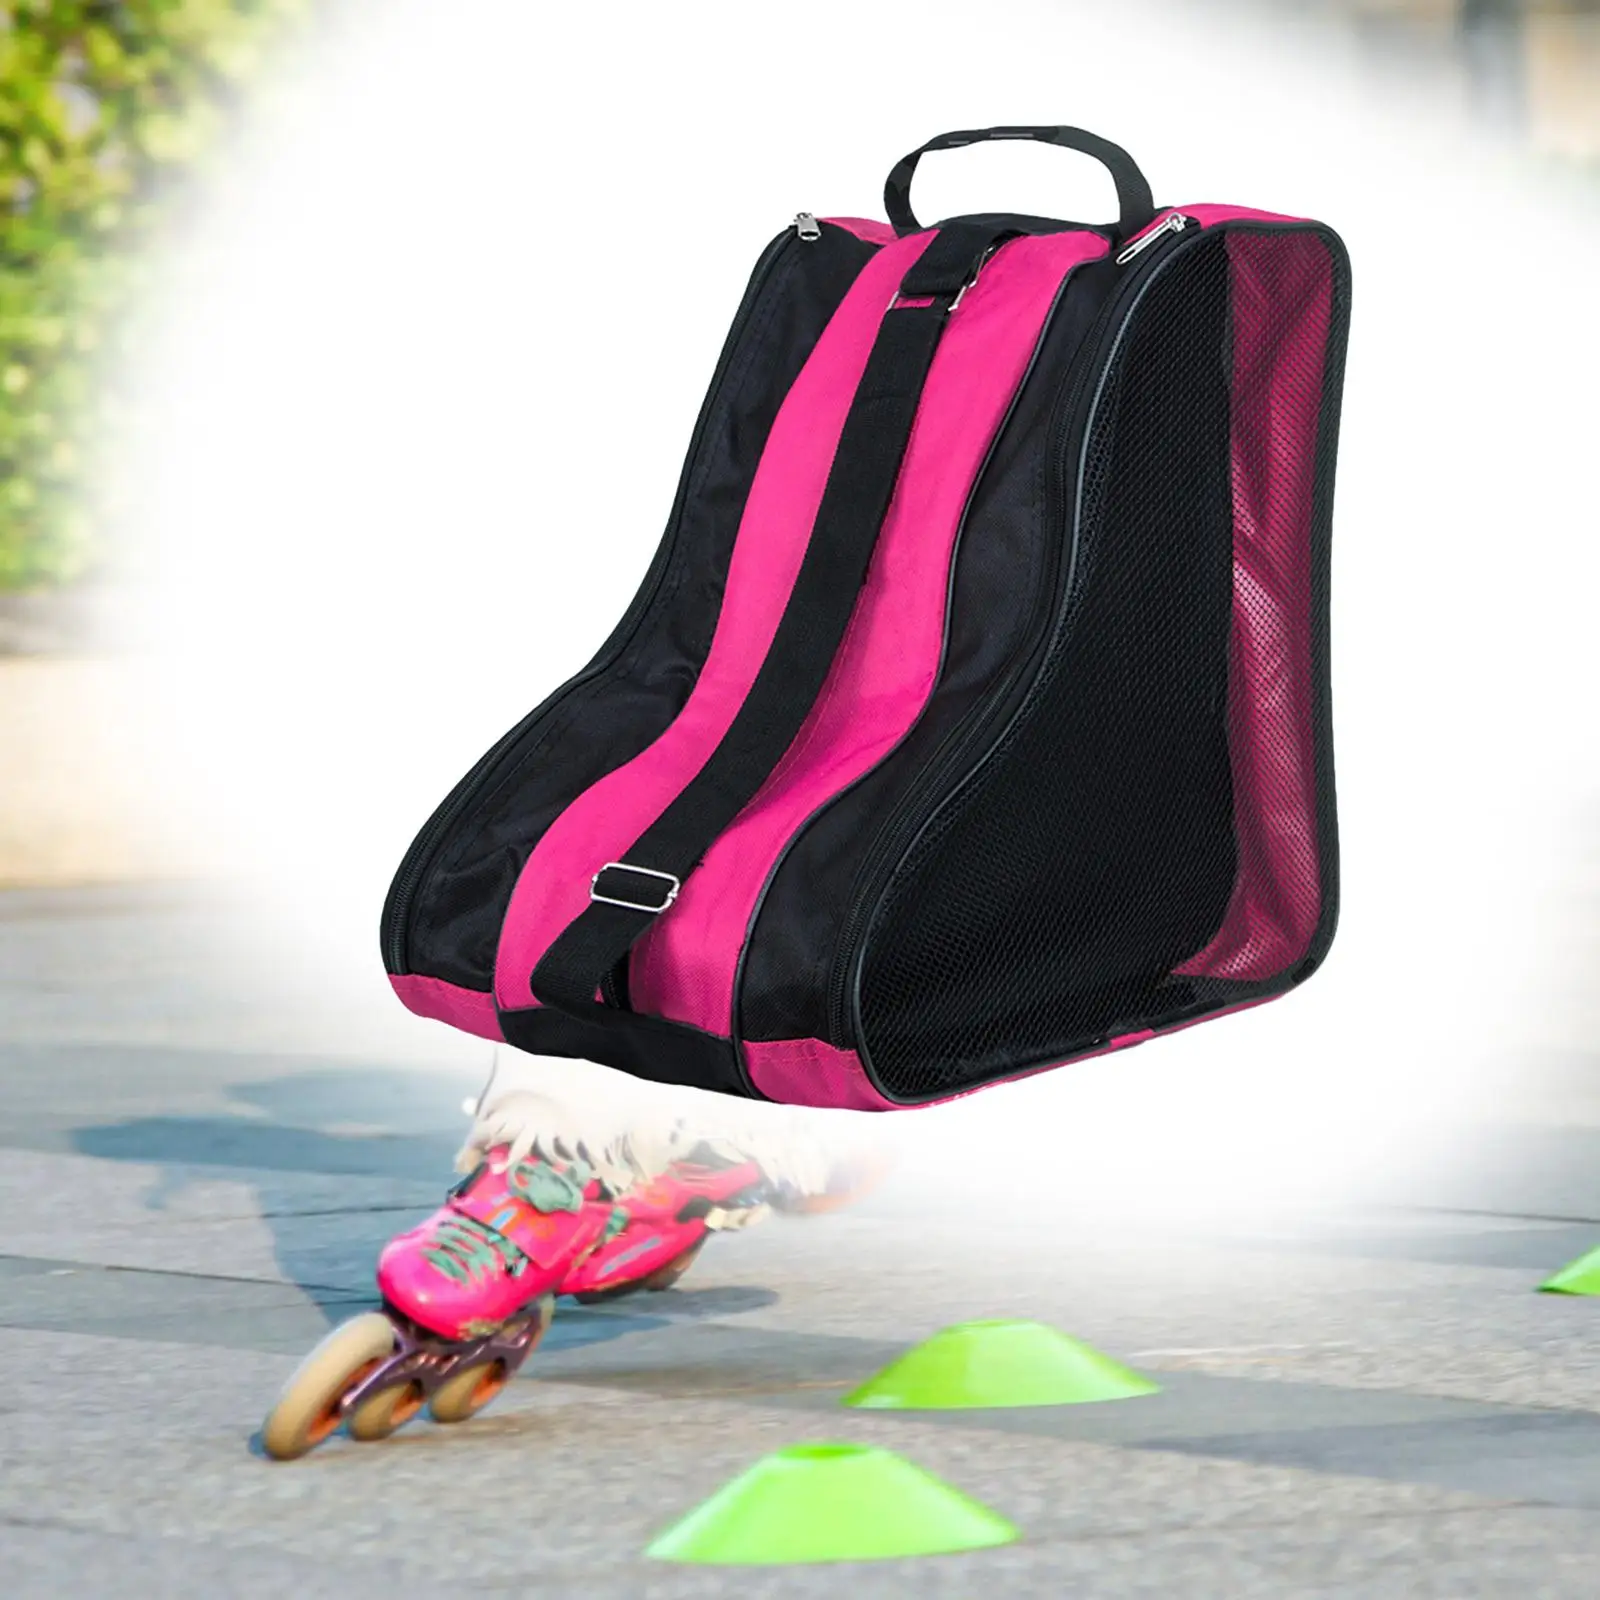 Roller Skate Bag Durable with Shoulder Strap Skate Accessories Adults Kids Roller Skate Carrier for Inline Skates Figure Skates